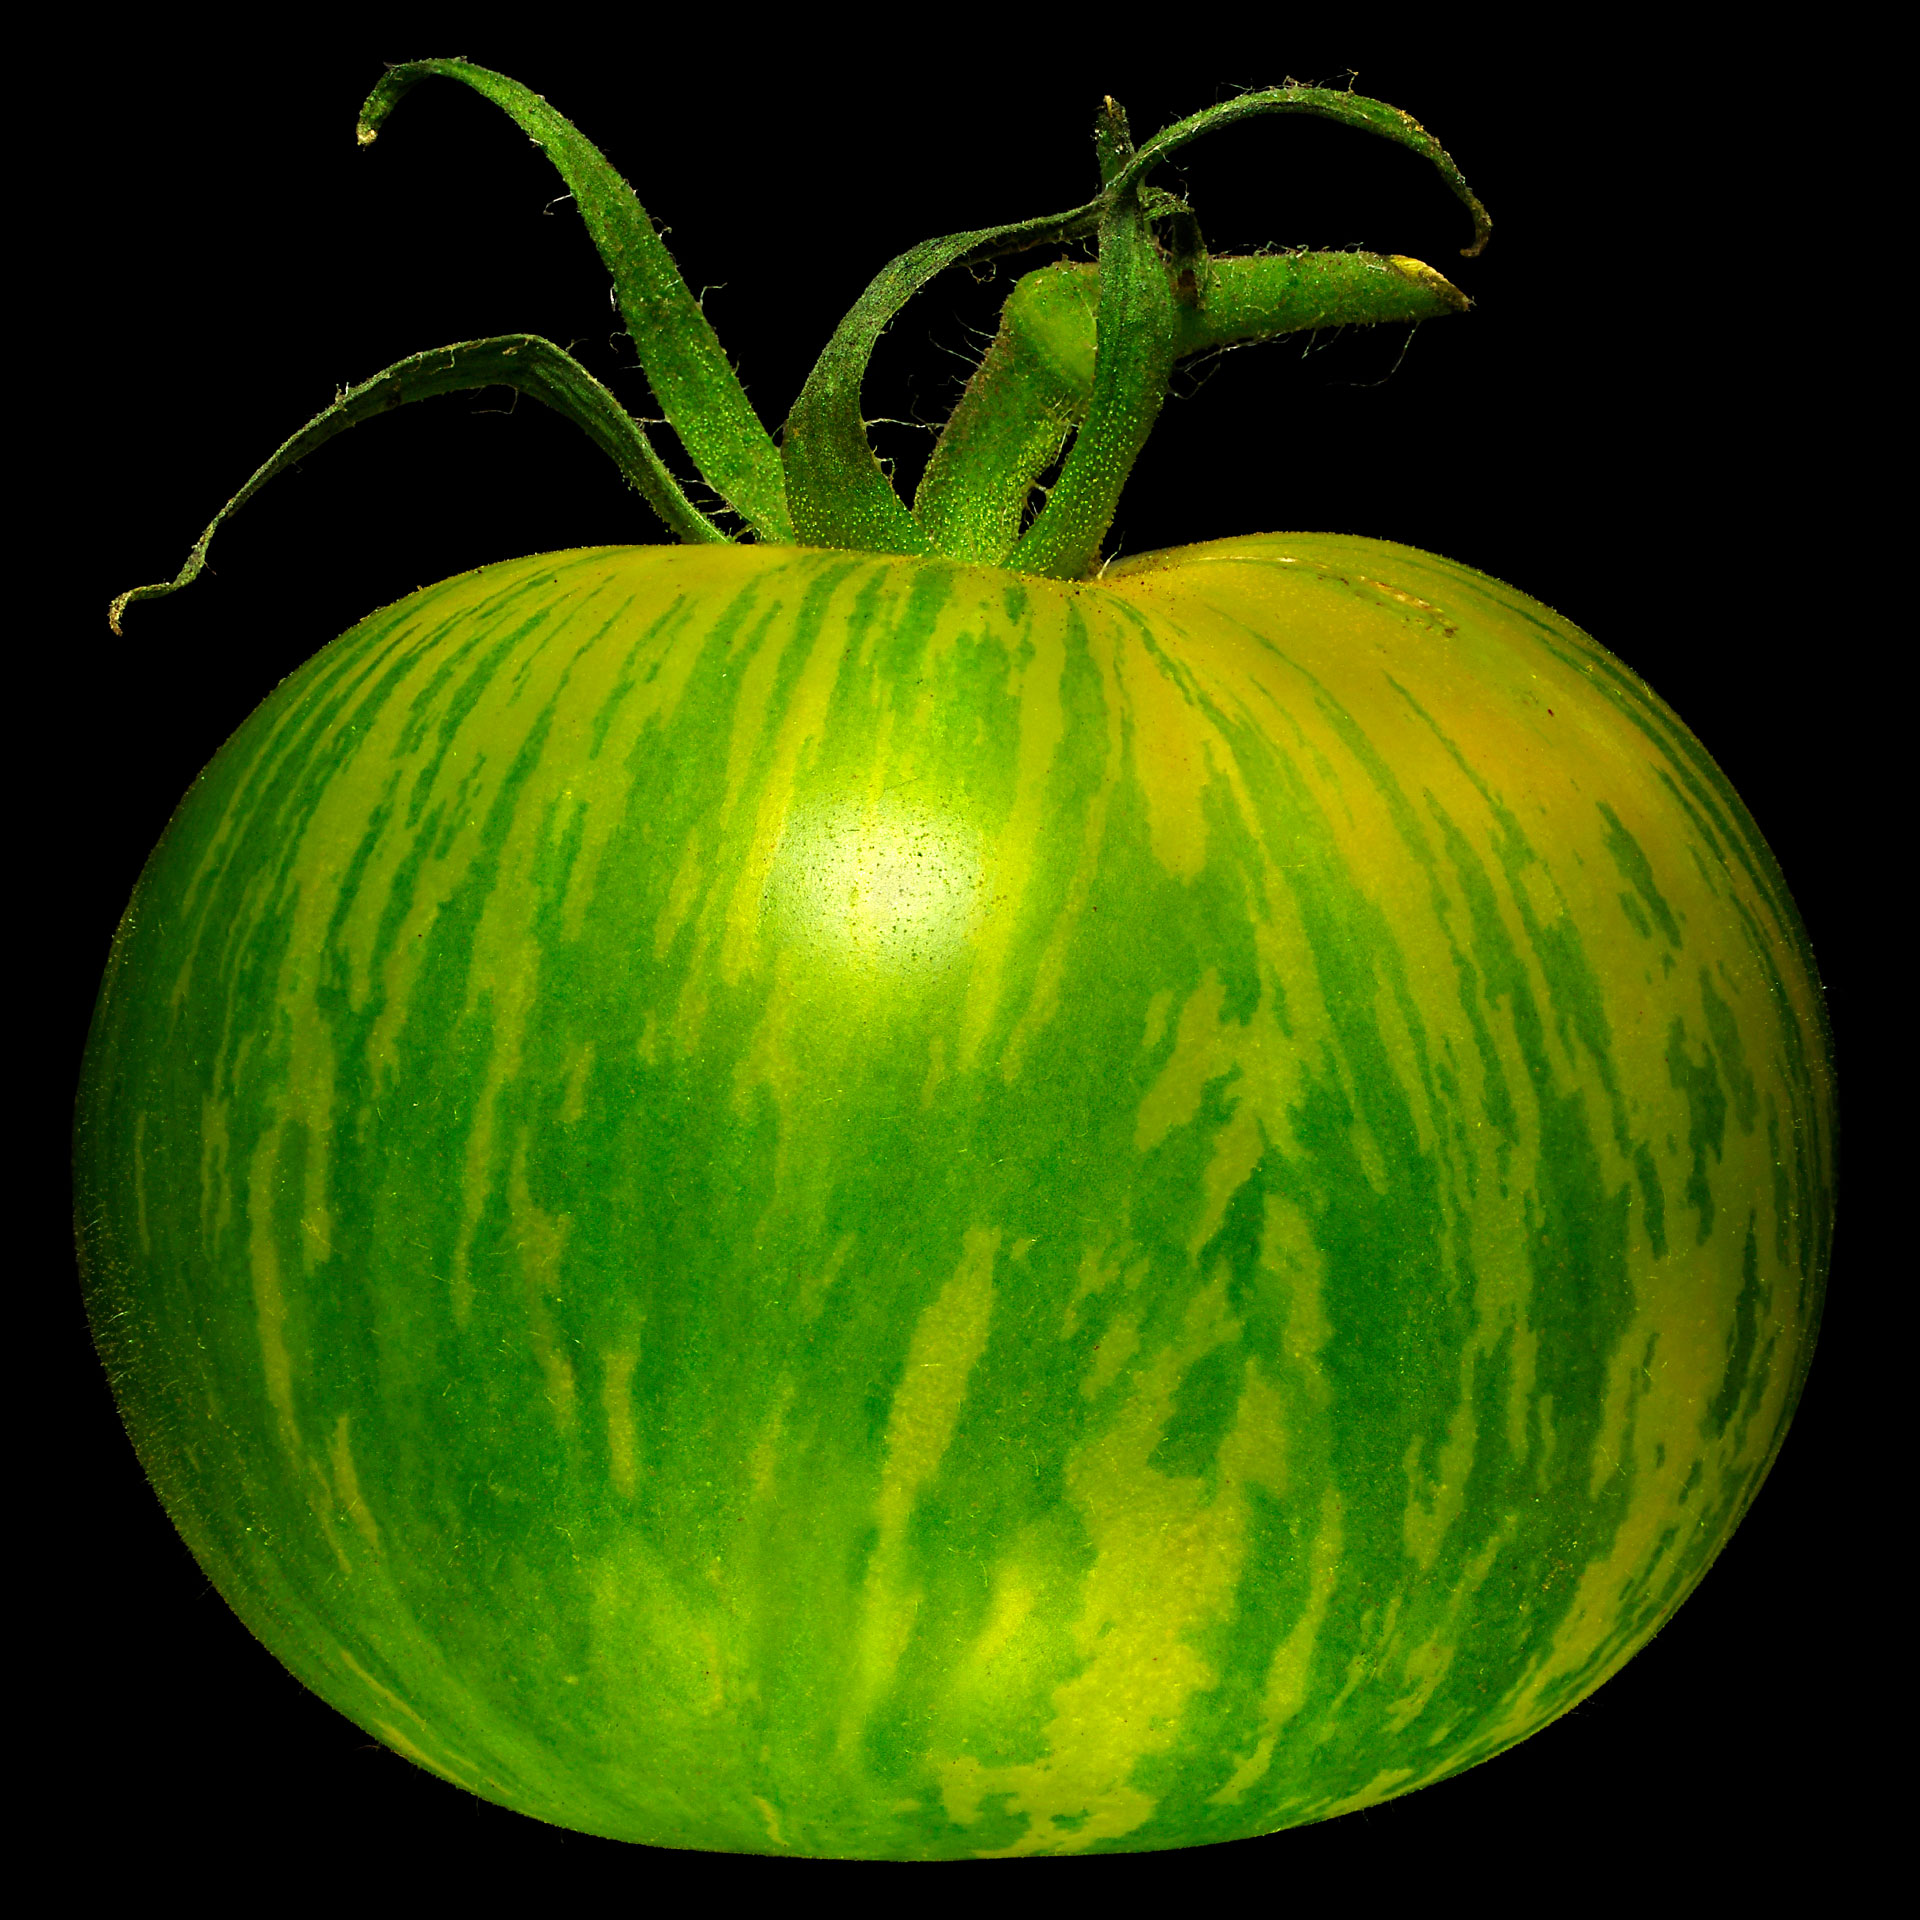 Das Grüne Zebra (gestreifte Tomate): Solanum lycopersicum ‚Green Zebra‘